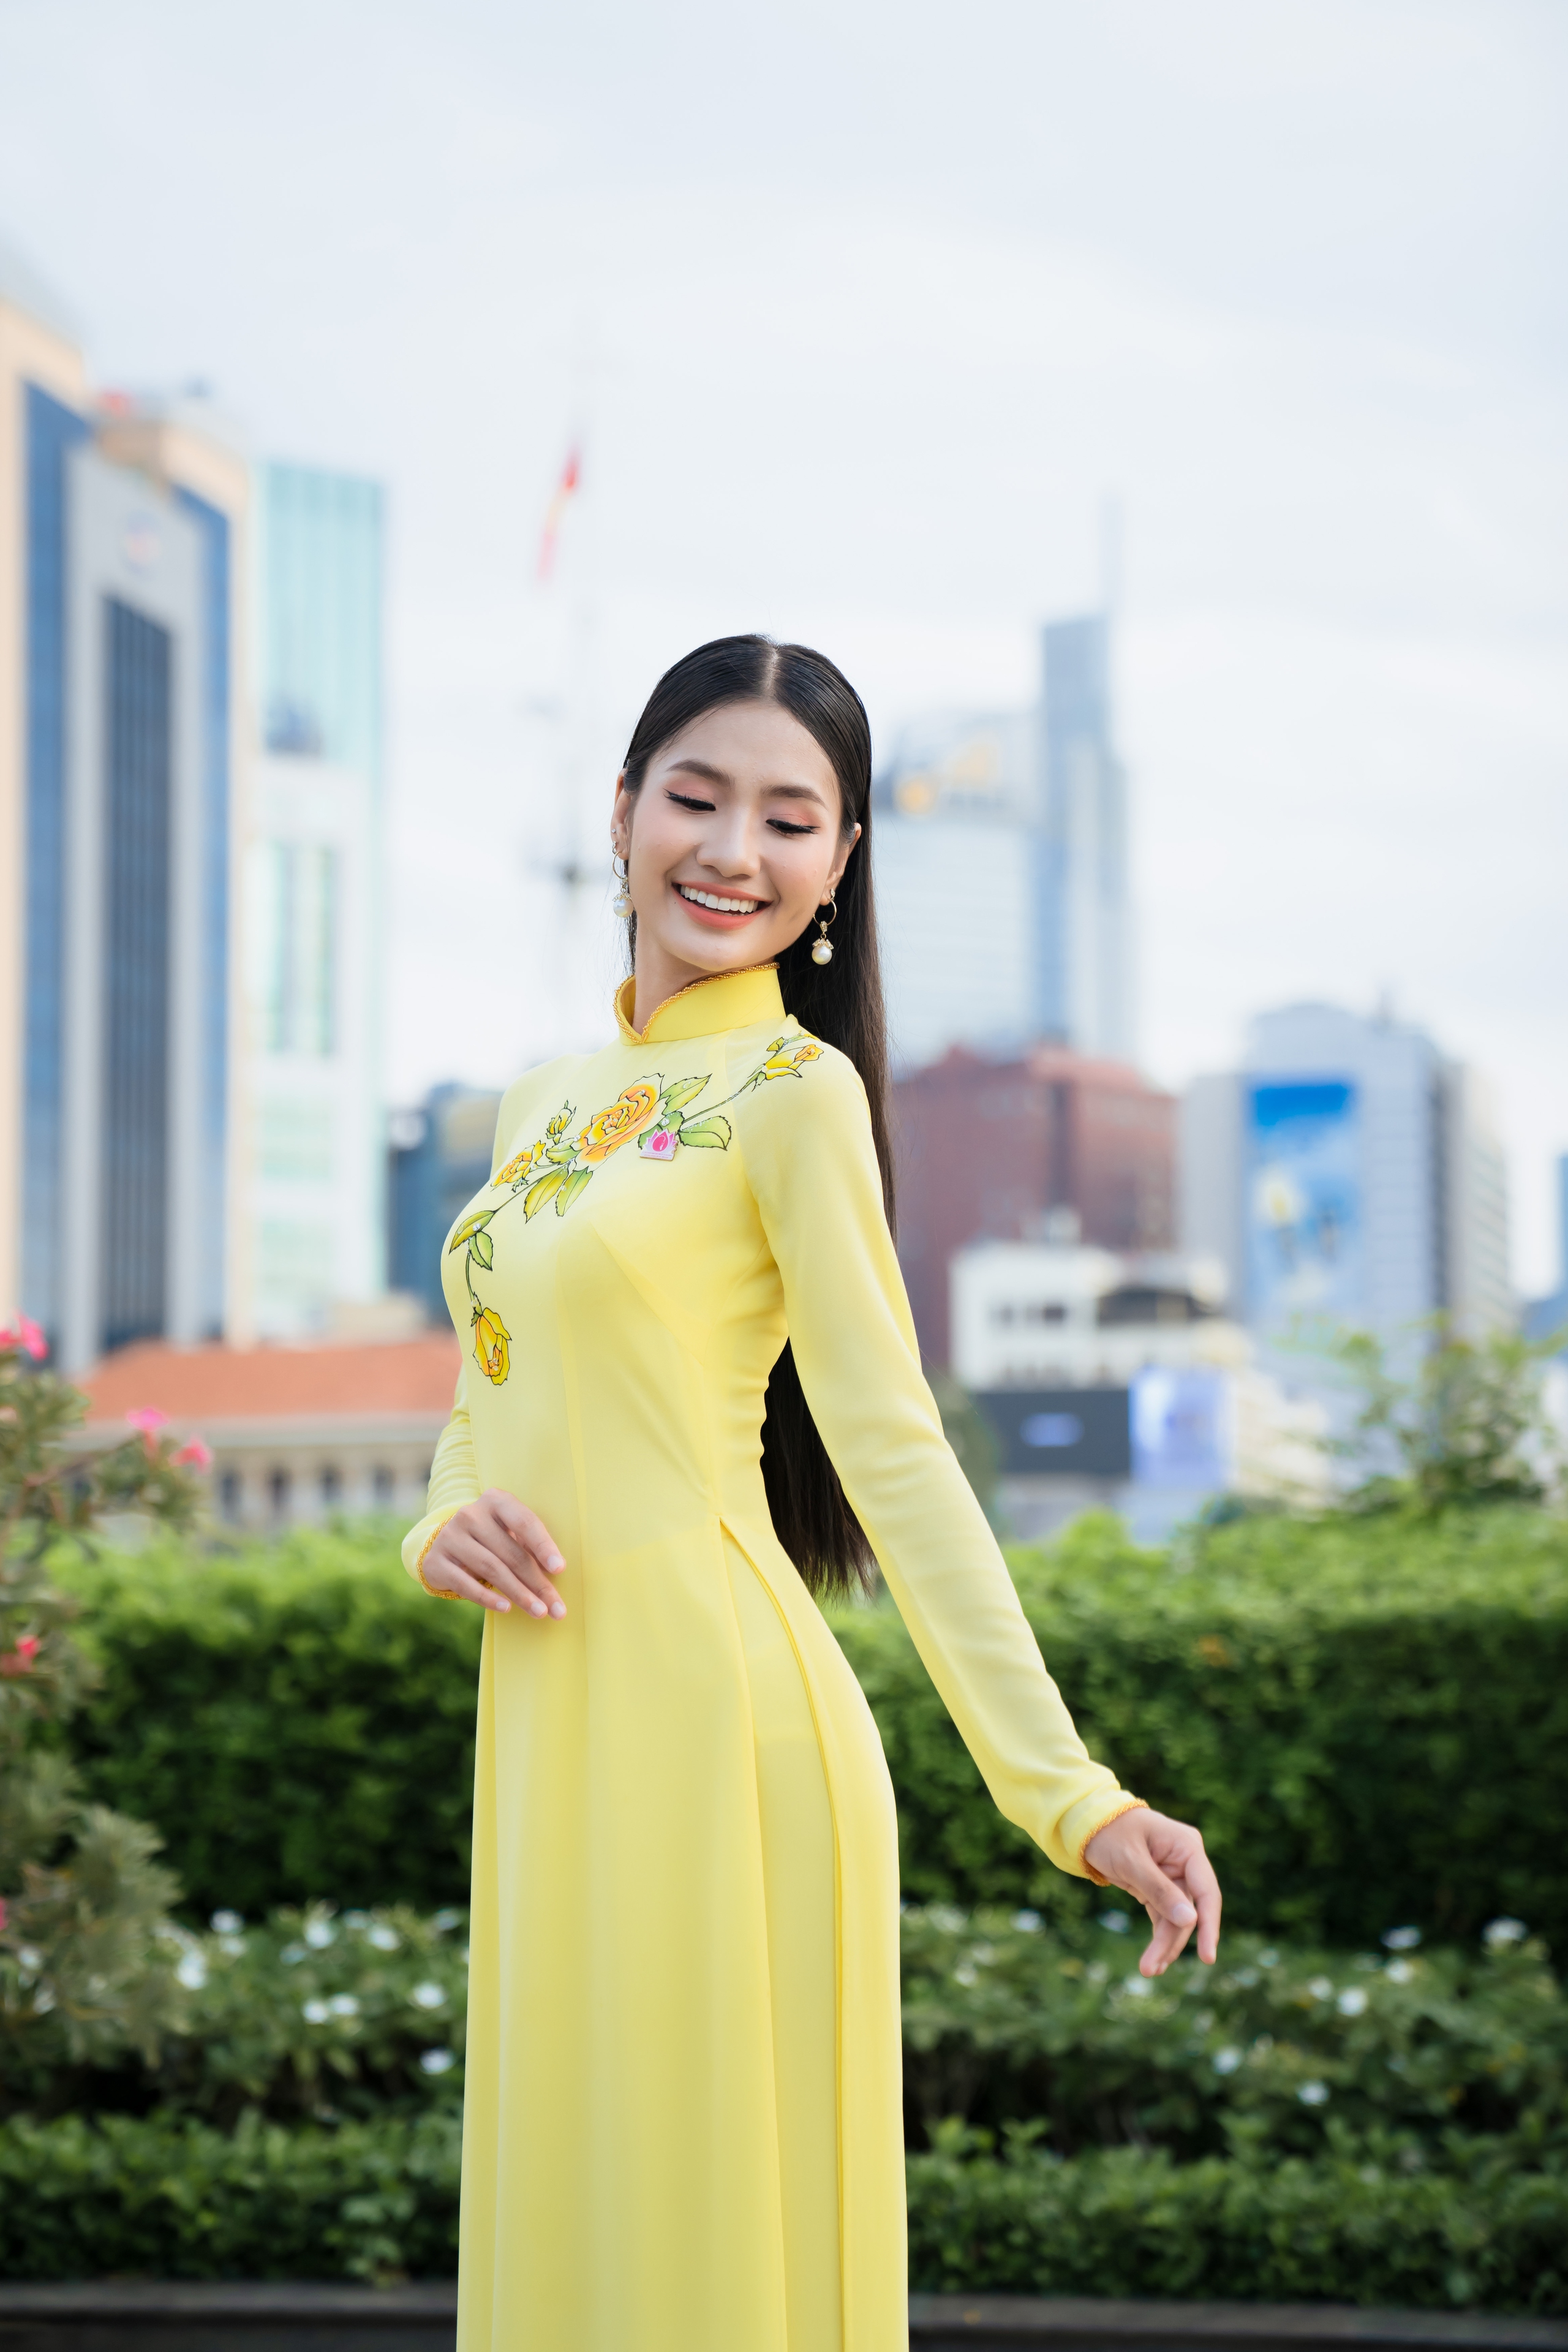 Hoa hậu Môi trường Thế giới Nguyễn Thanh Hà: “Người của công chúng nên tránh lan truyền kiến thức sai lệch”- Ảnh 1.